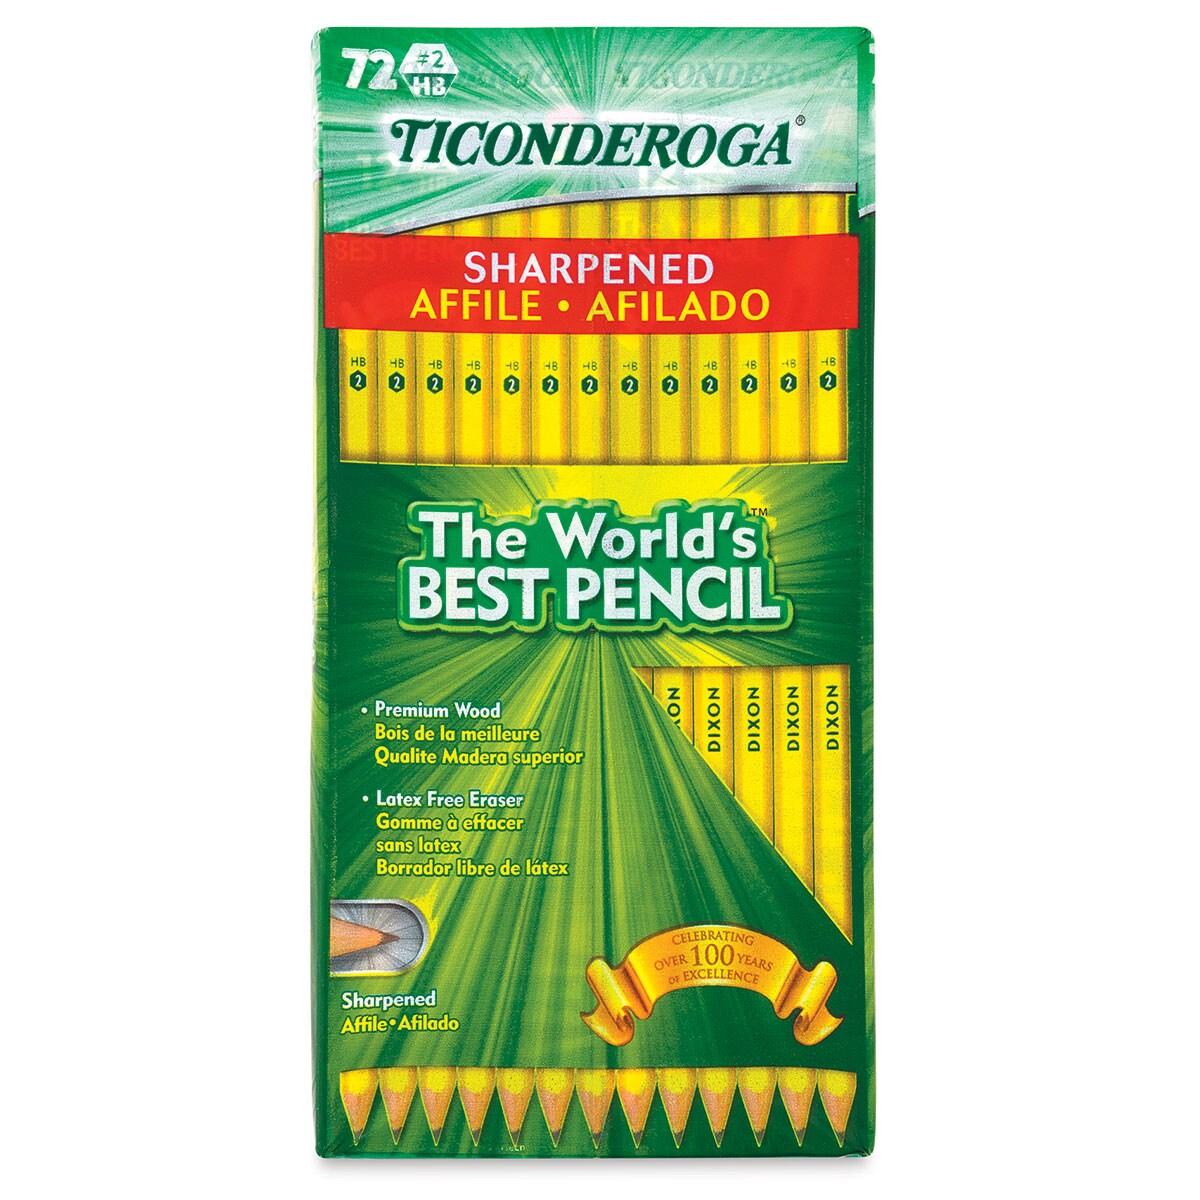 Dixon Ticonderoga Pencils - Box of 72, Pre-Sharpened